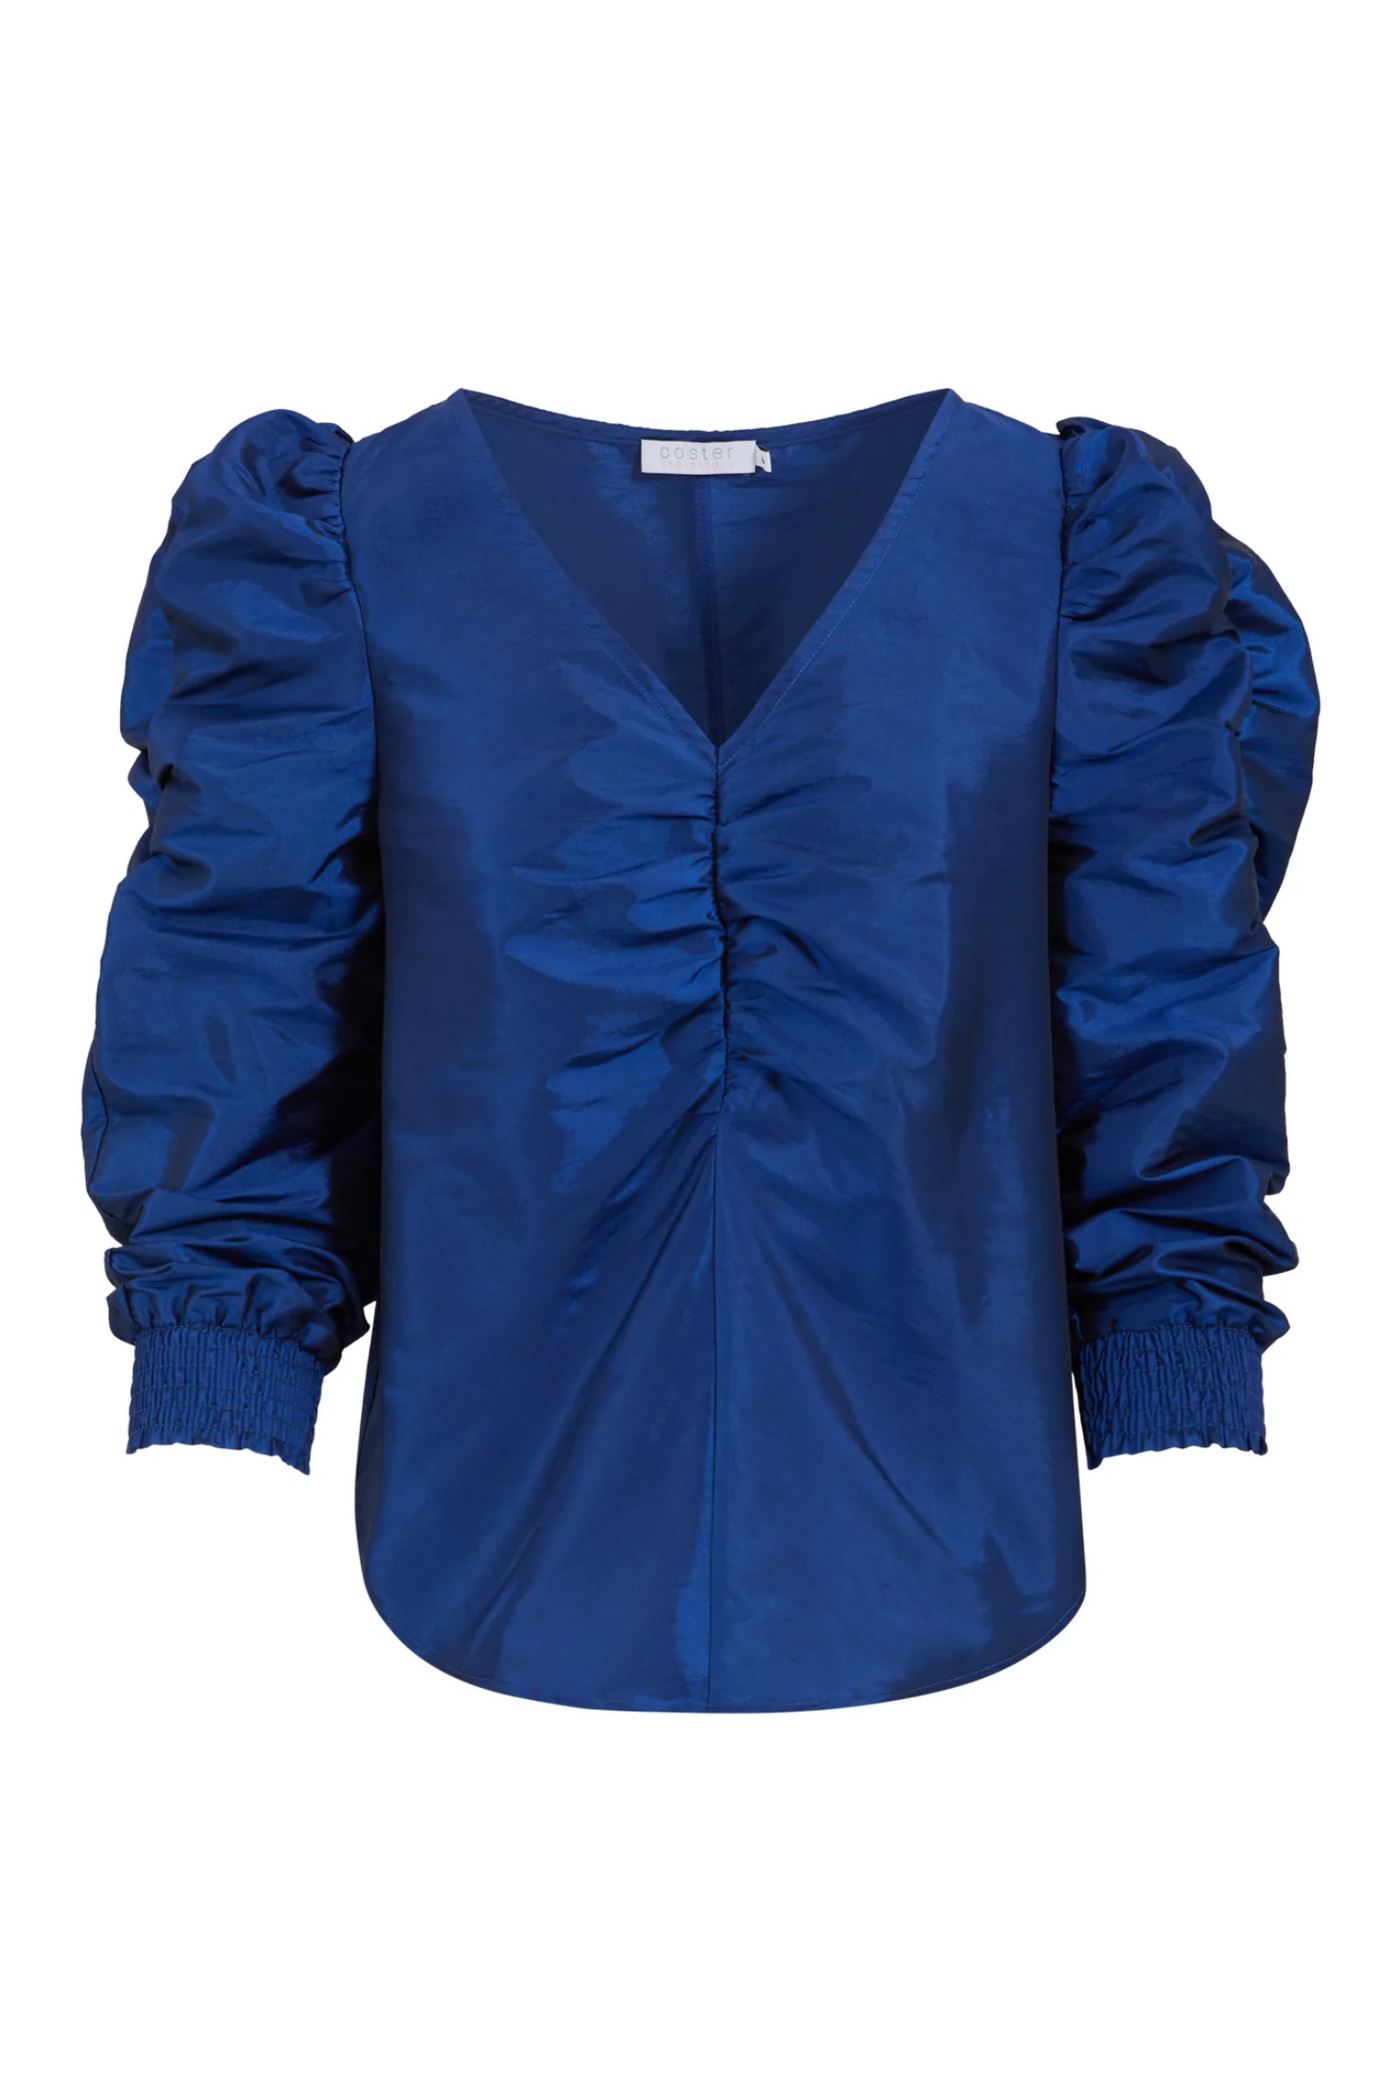 Coster Copenhagen Blue Satin Dress | Jezabel Boutique